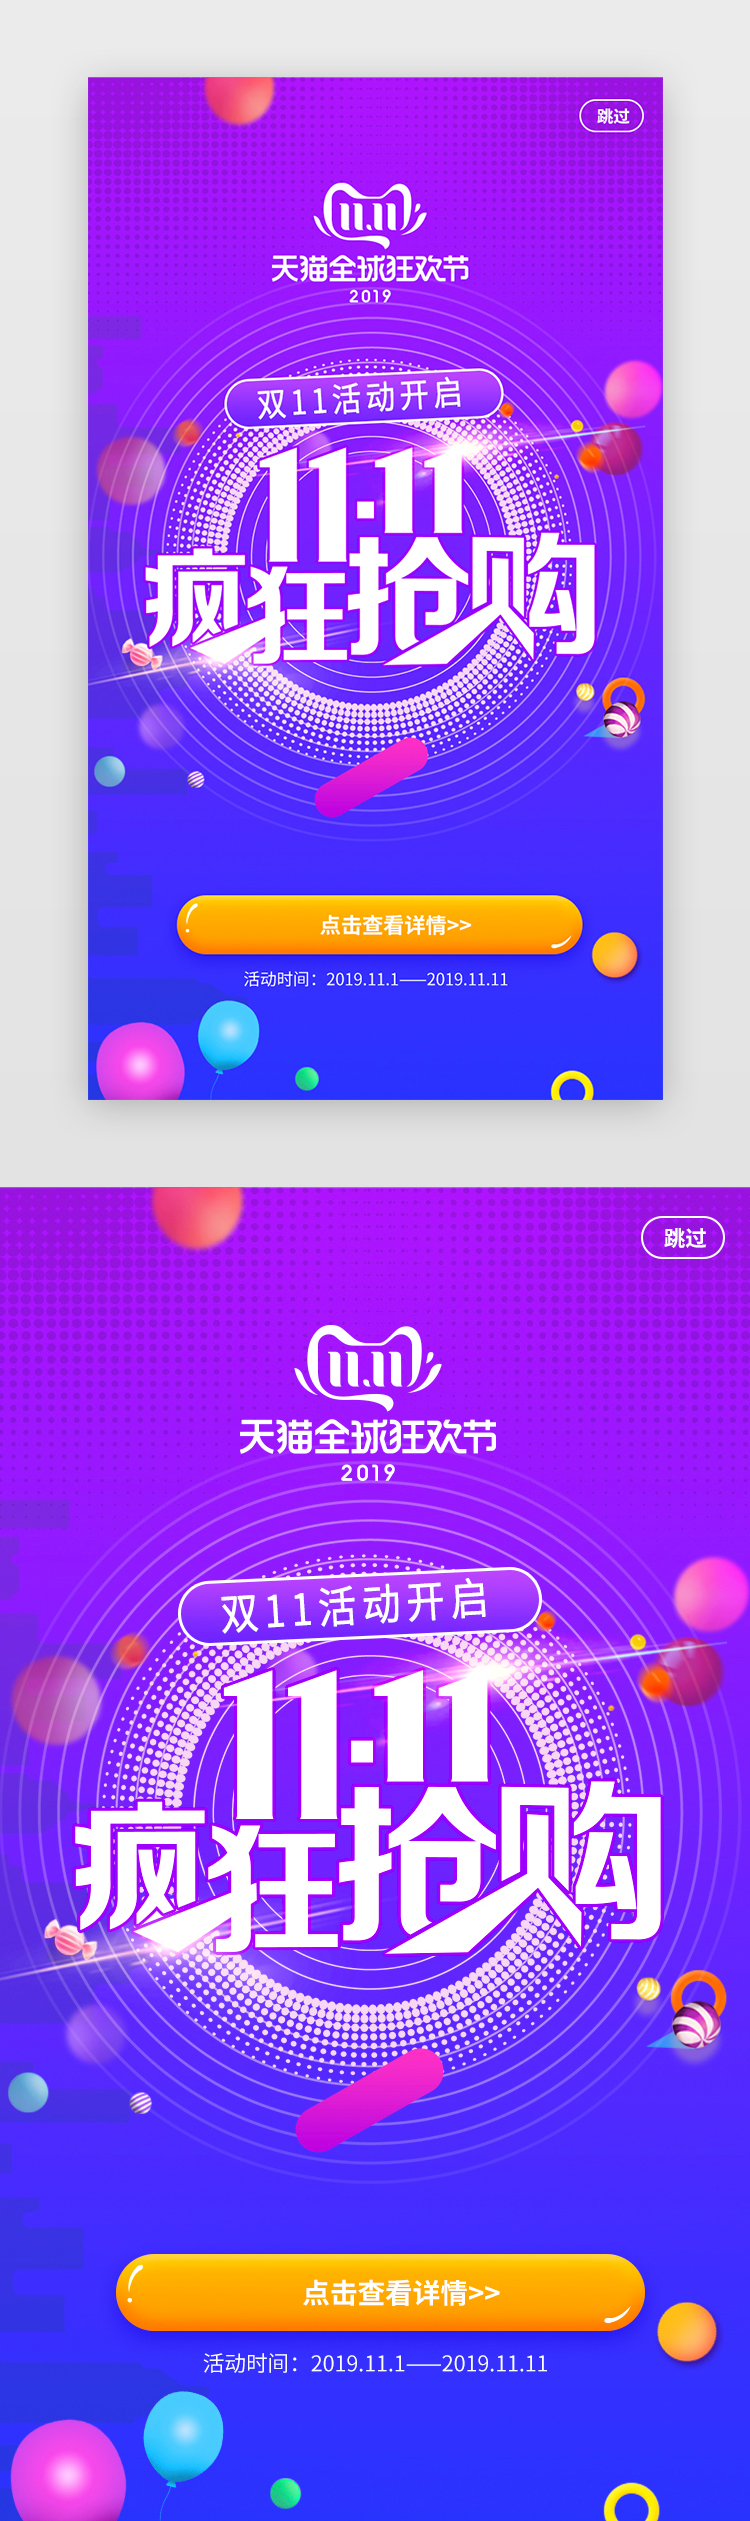 紫色系天猫优惠双十一促销app闪屏活动页图片